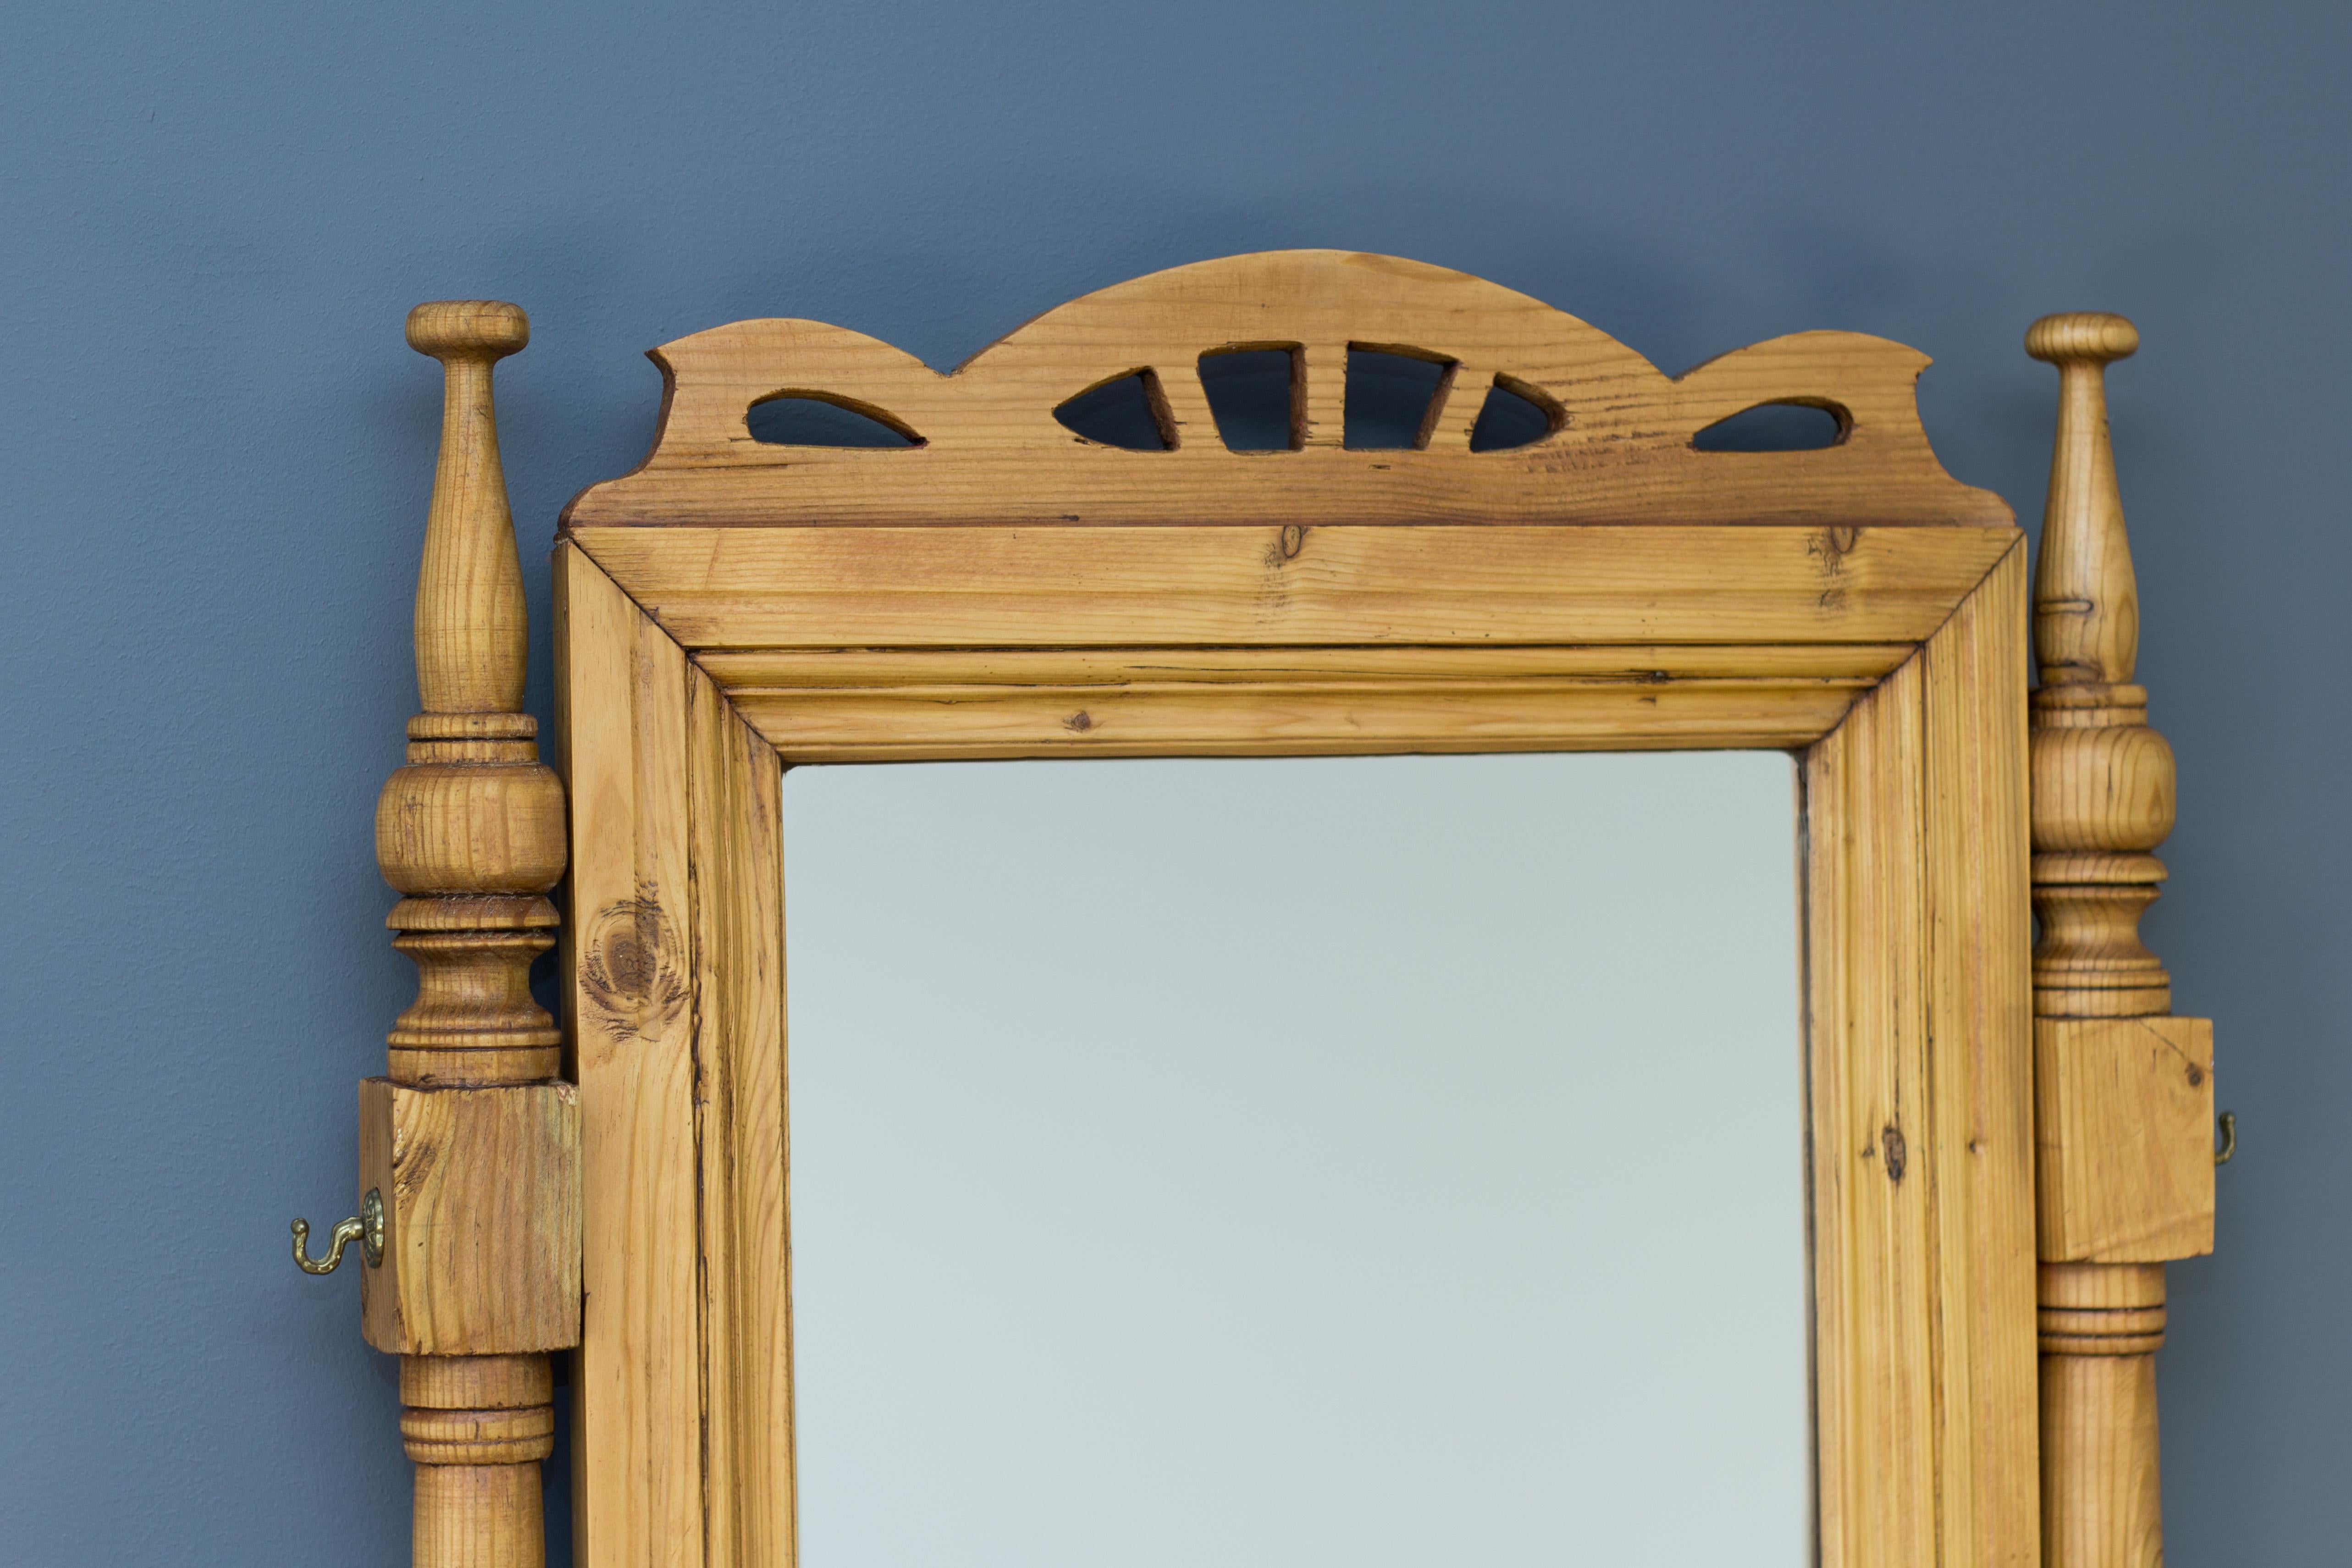 Commode de style Art nouveau avec miroir, fabriquée dans les années 1930 en pin baltique. Cinq grands tiroirs et trois petits tiroirs de vanité supérieurs. Poignées de tirage originales Art Nouveau.
Dimensions : hauteur totale 189 cm / 74.4 in ; 
La